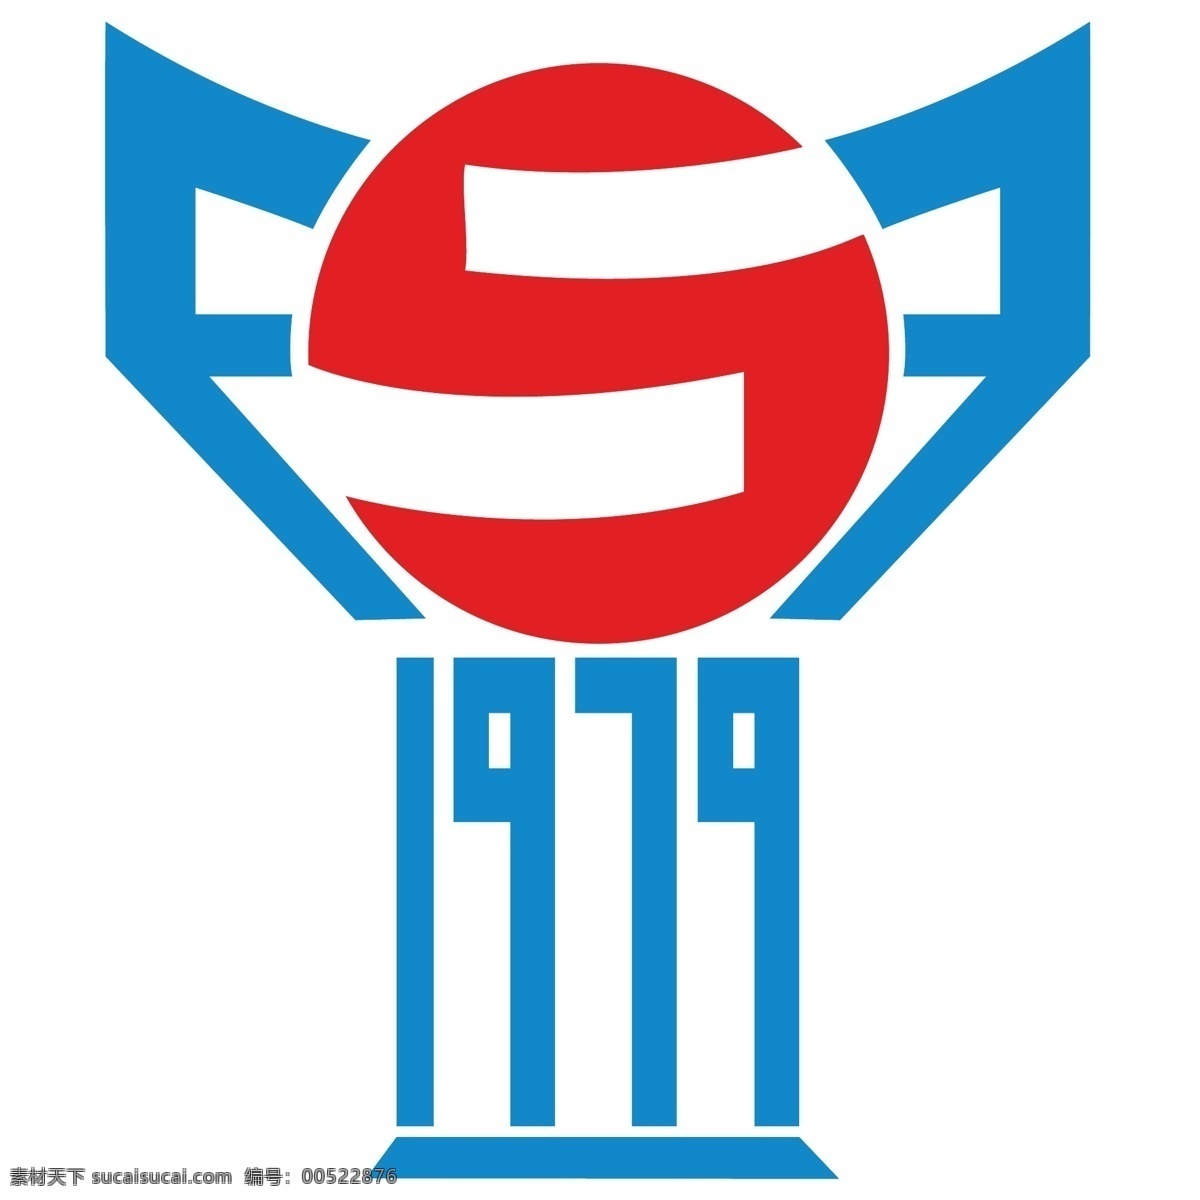 法罗群岛 足球 协会 标志 法罗 自由 psd源文件 logo设计